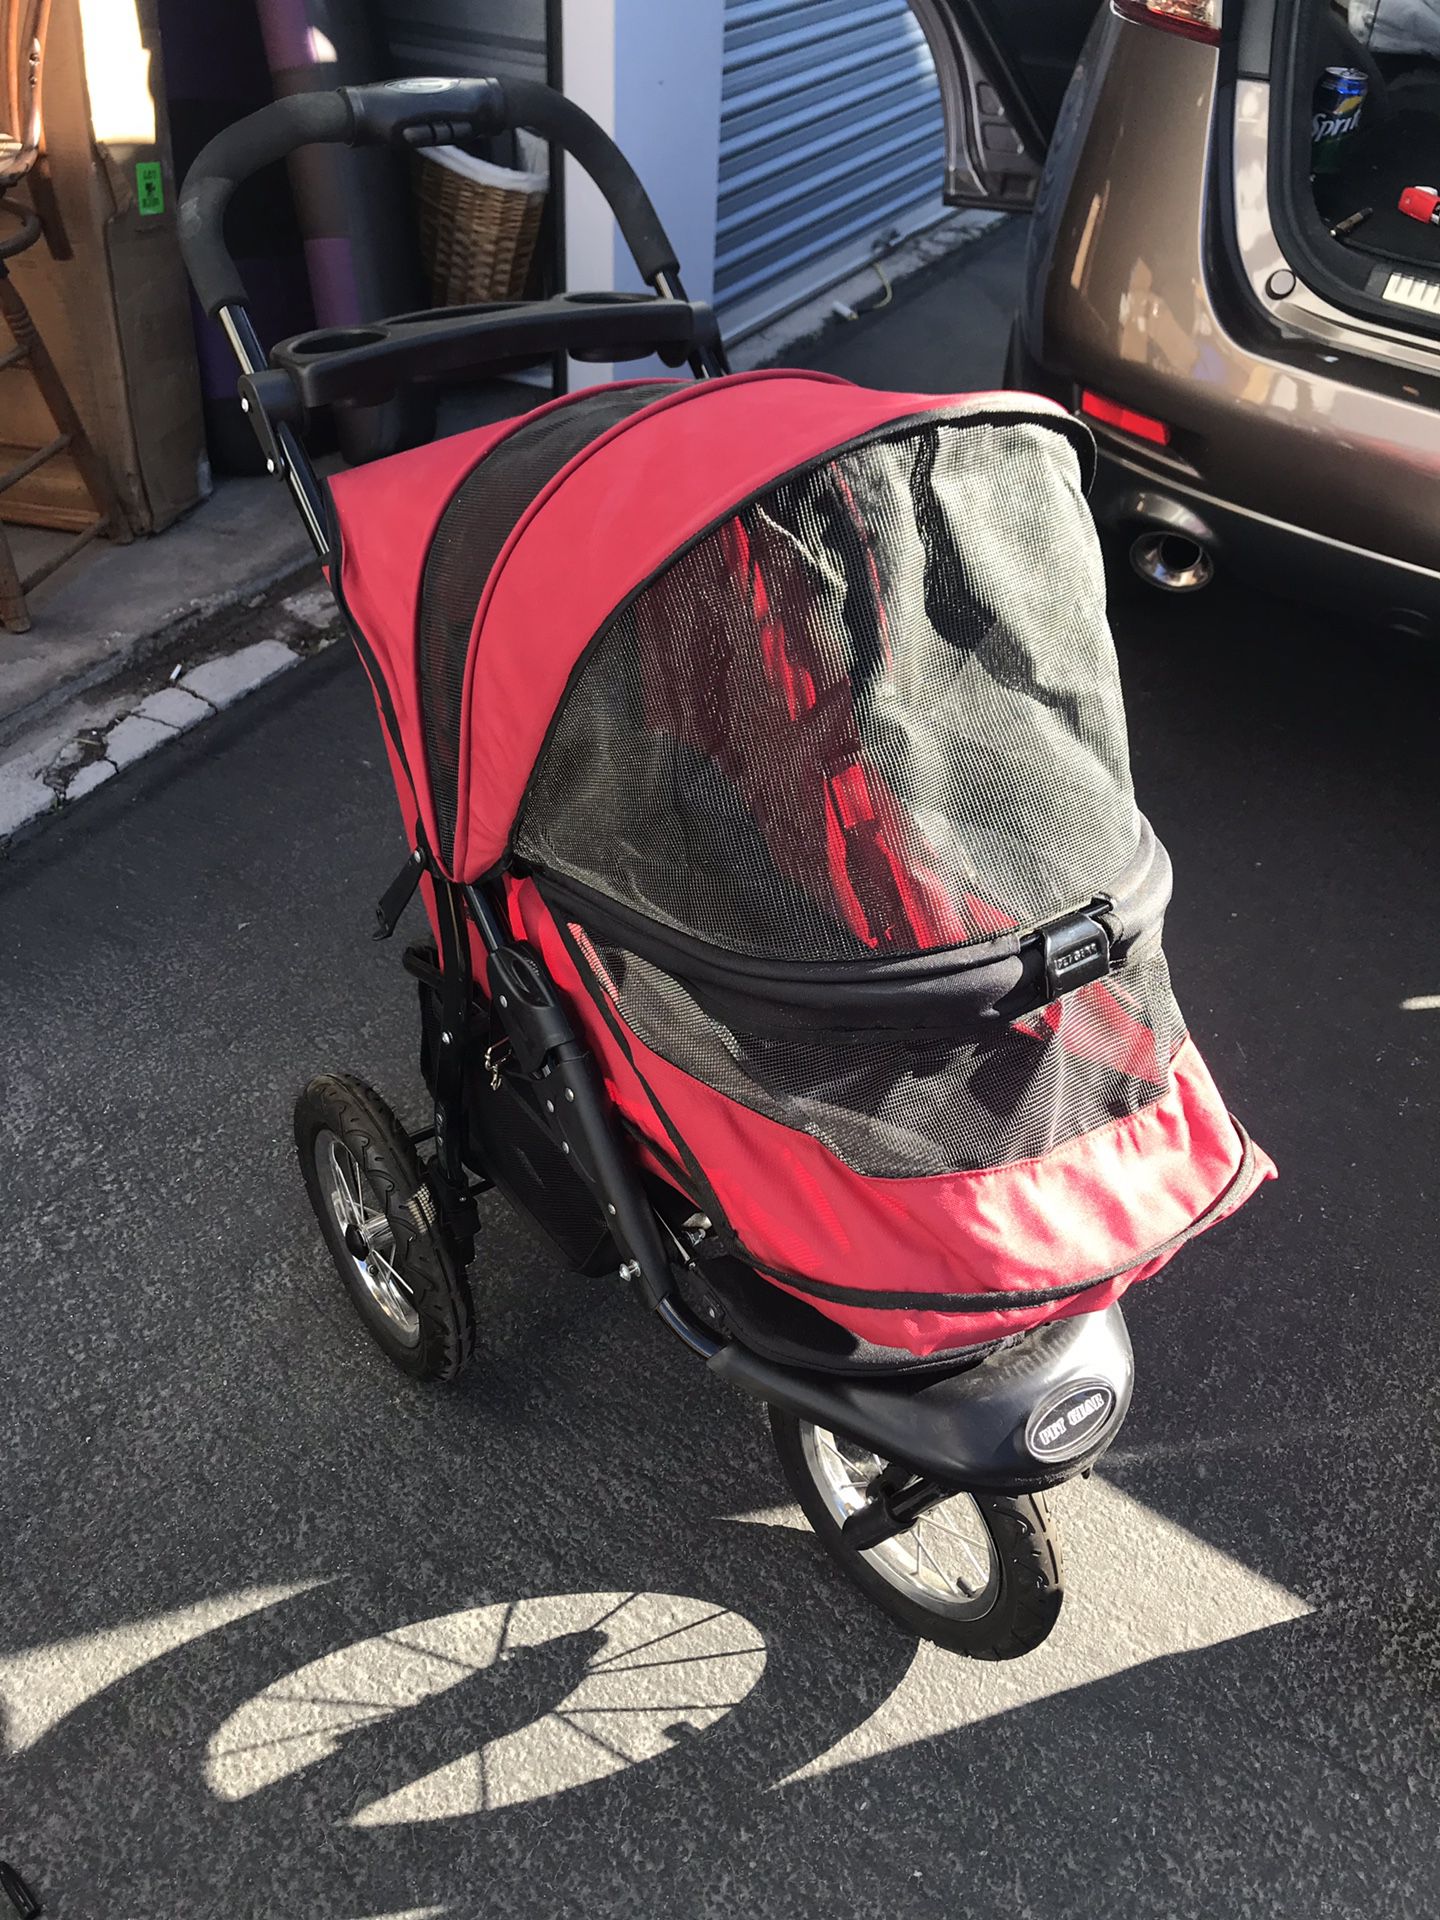 Dog stroller like new but spilled power inside Easy fix